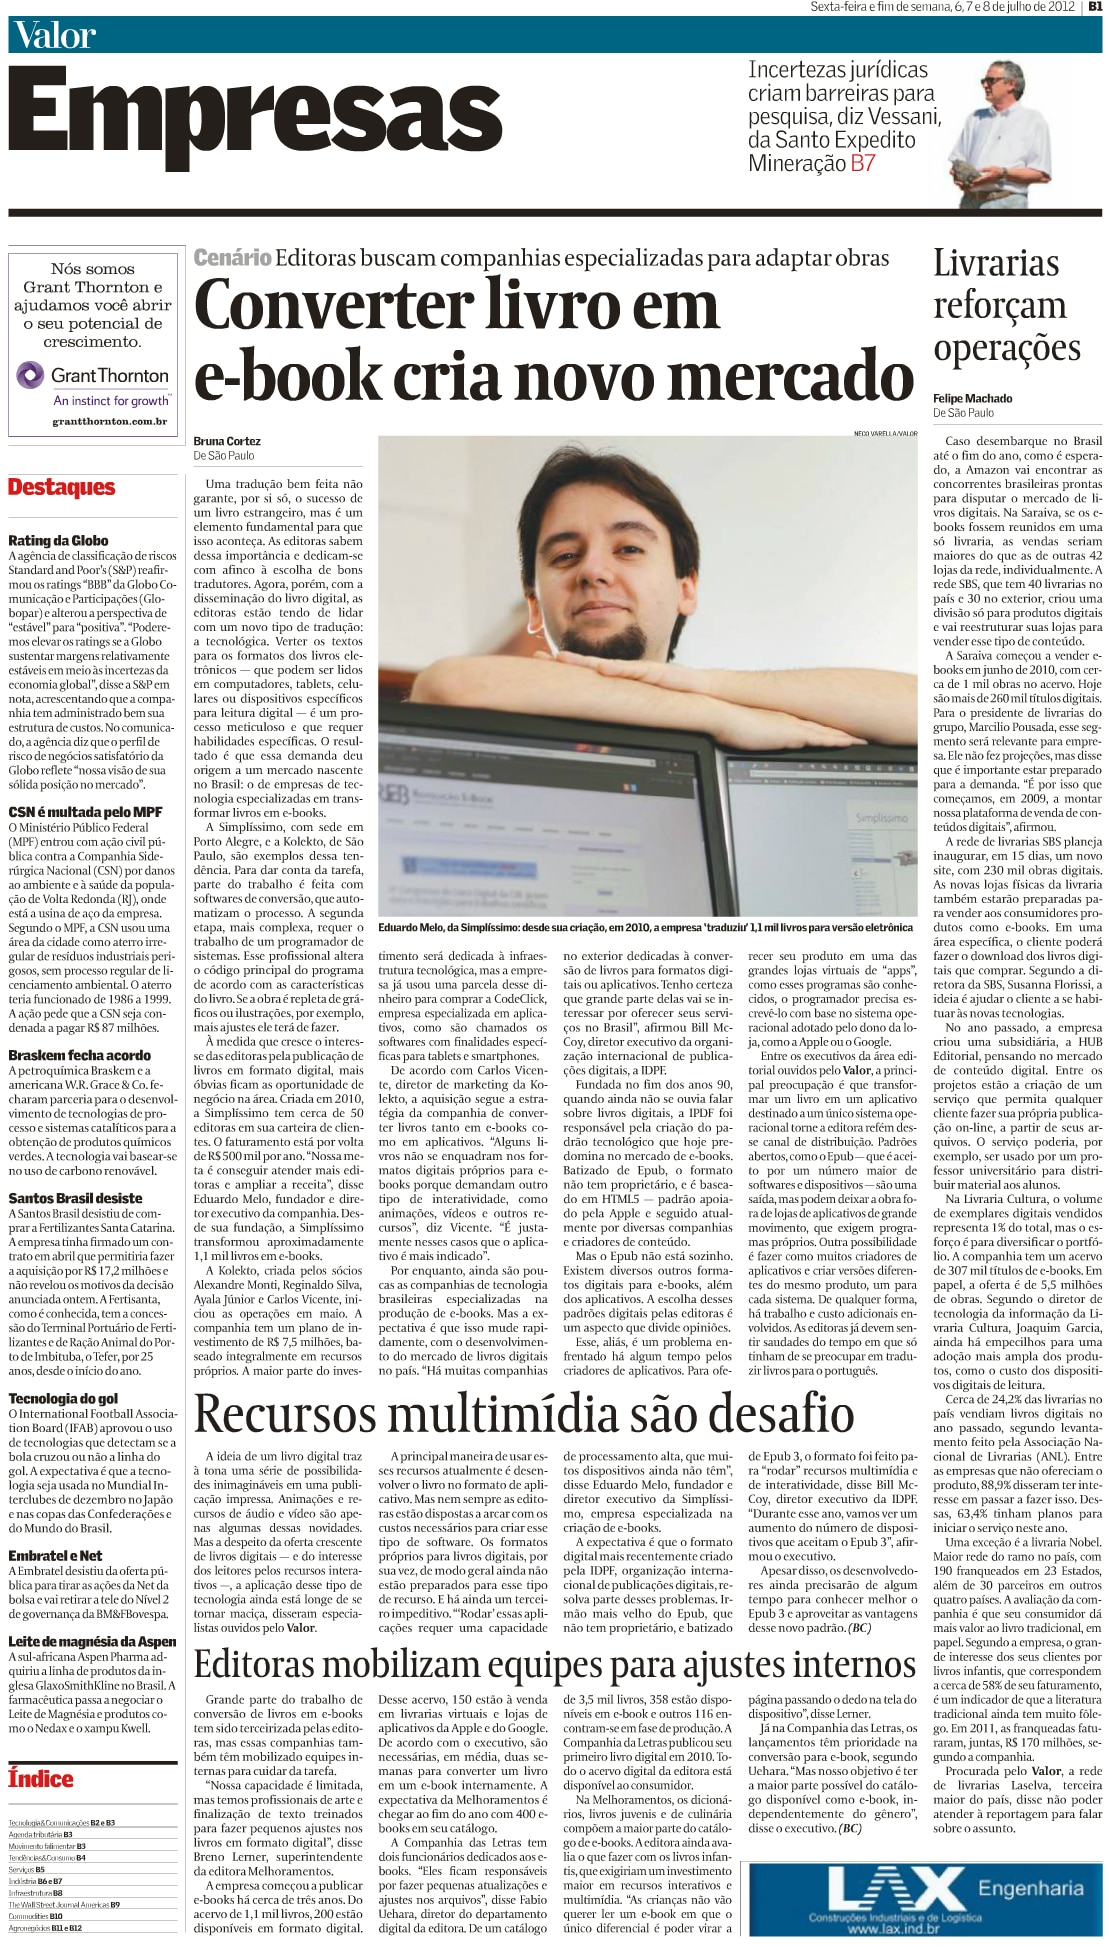 Matéria no jornal Valor Econômico - 07/2012